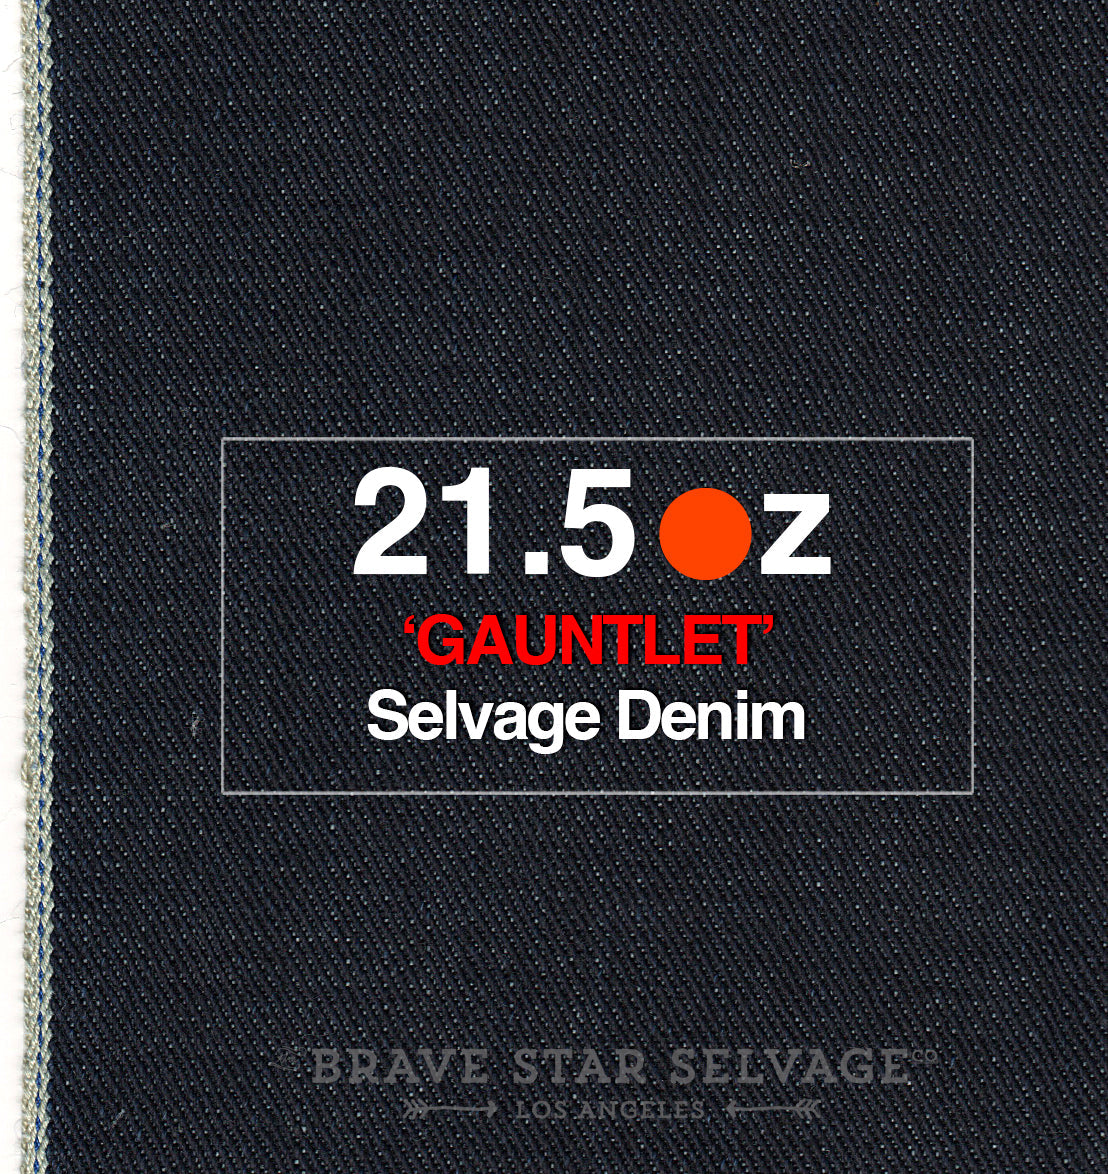 Regular Taper 21.5oz 'Gauntlet' Selvage Denim - Brave Star Selvage